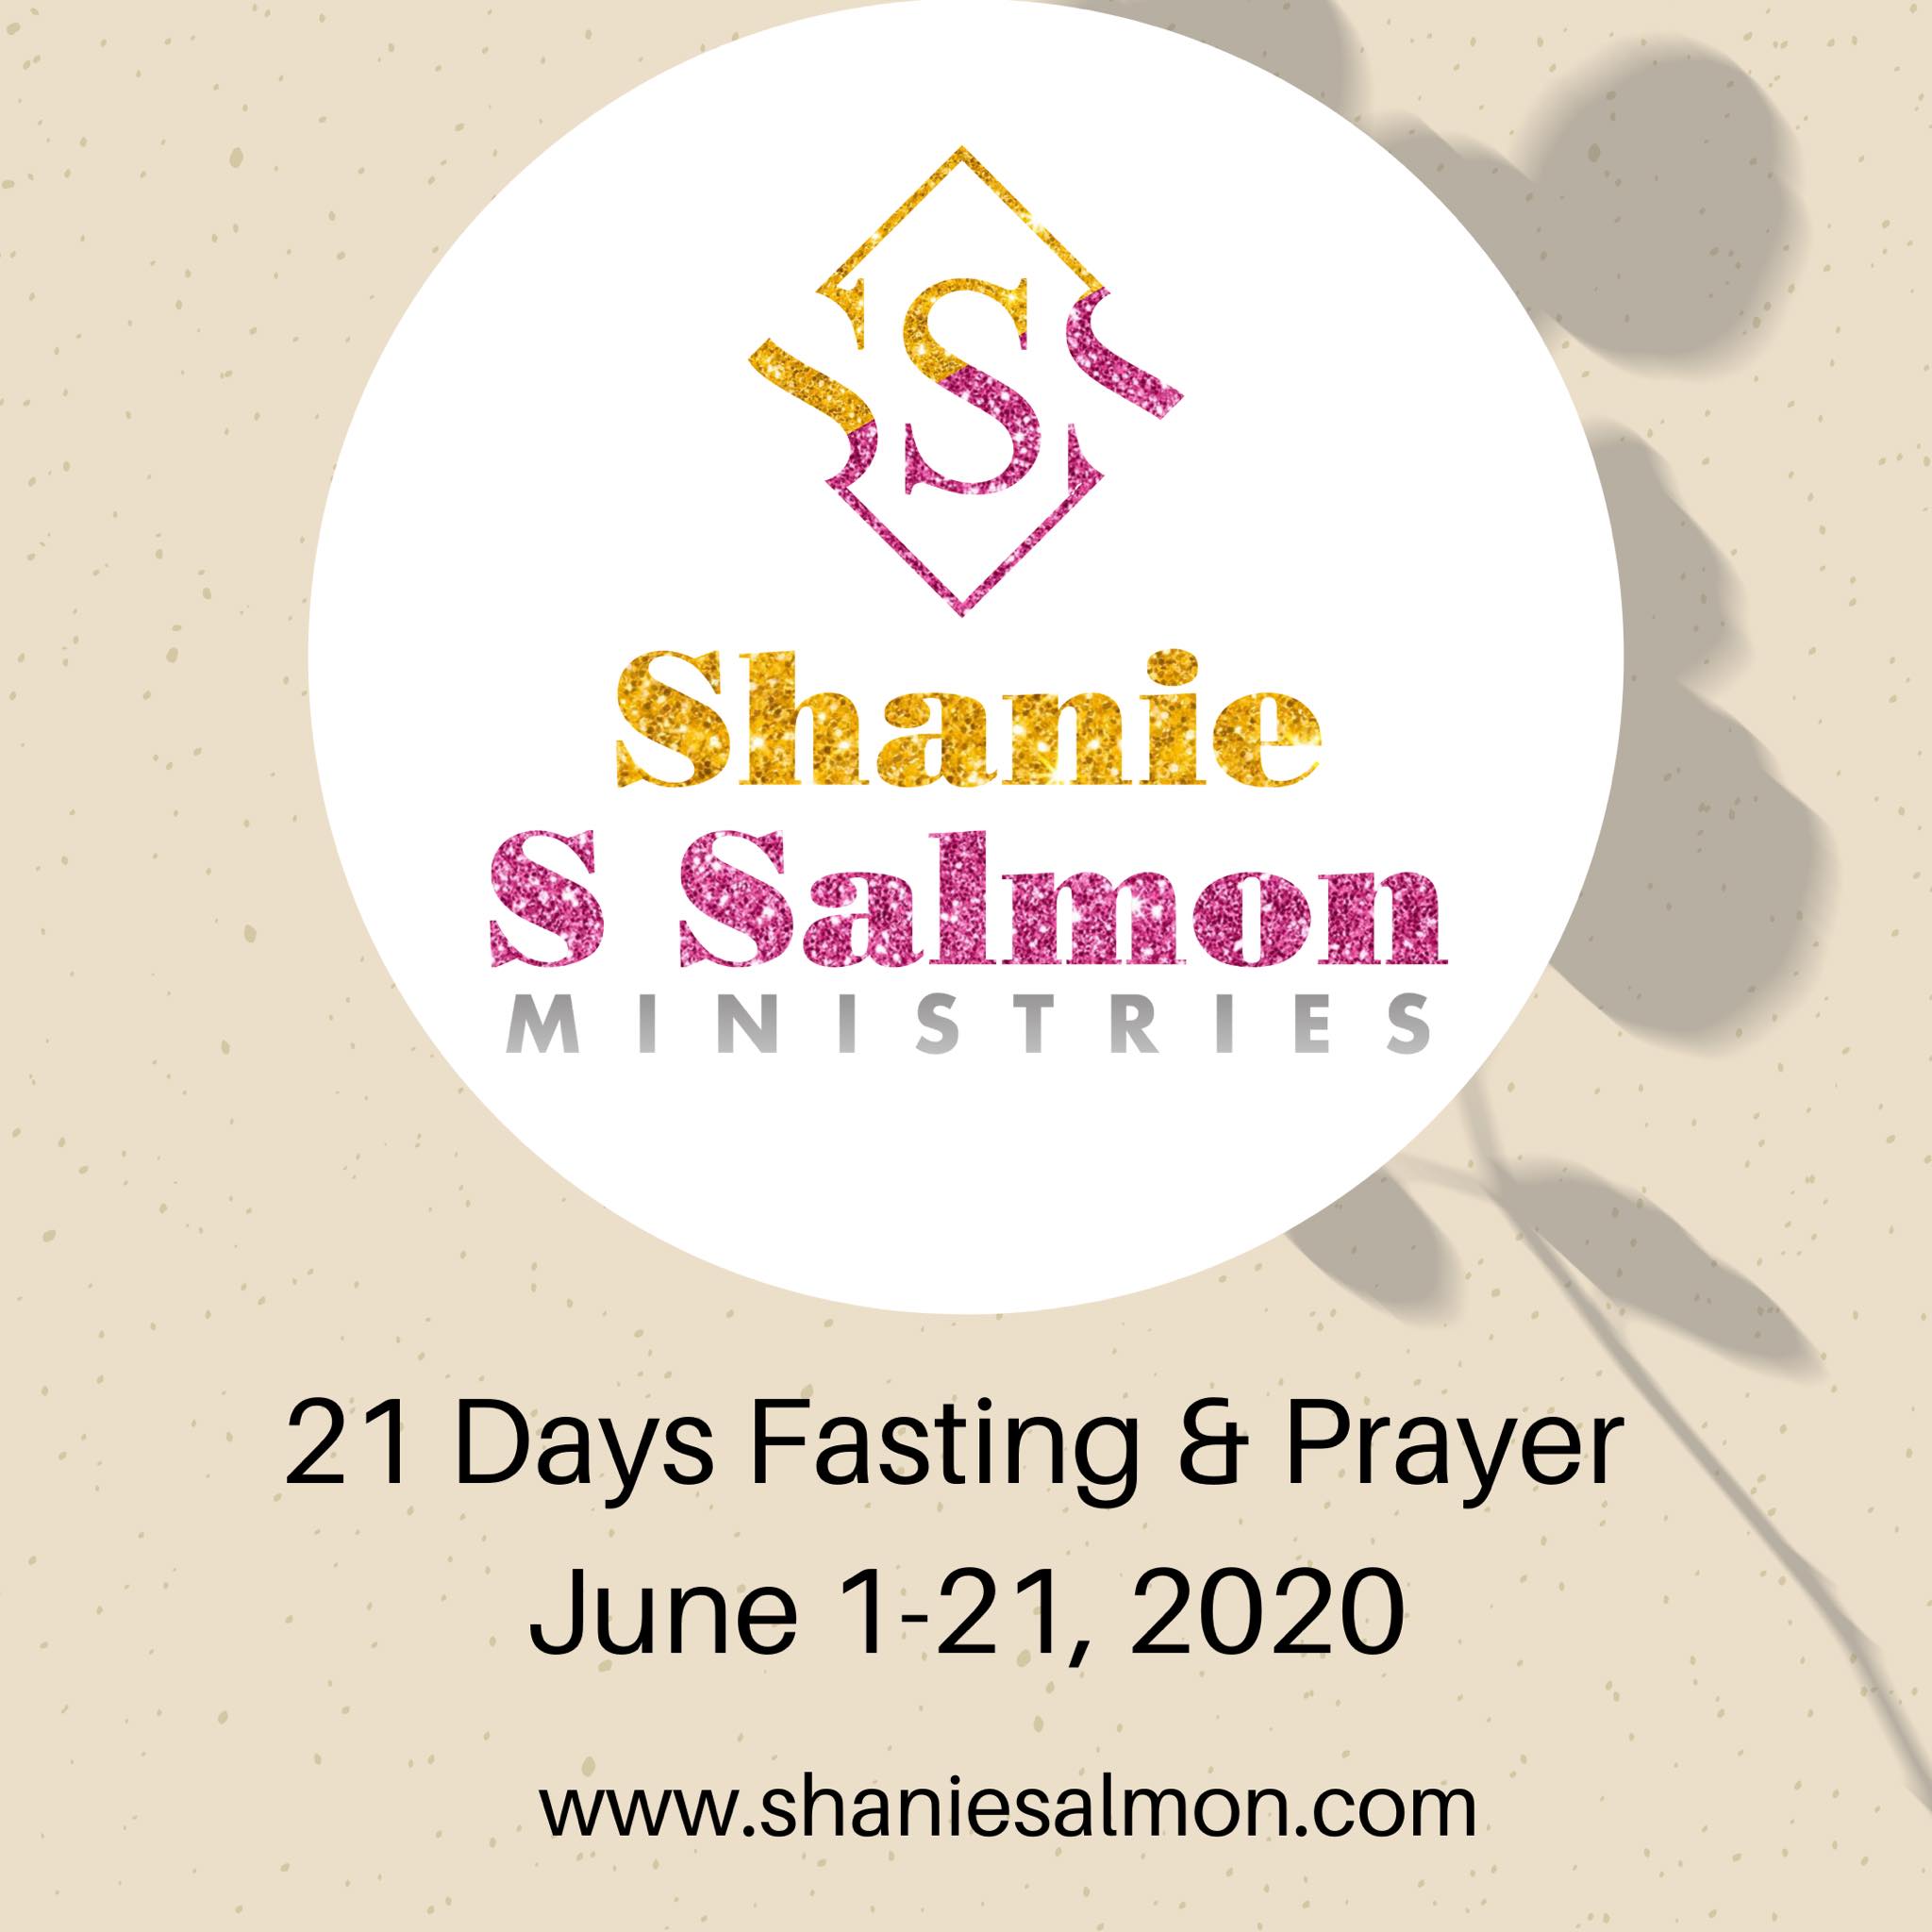 Fasting &Prayer